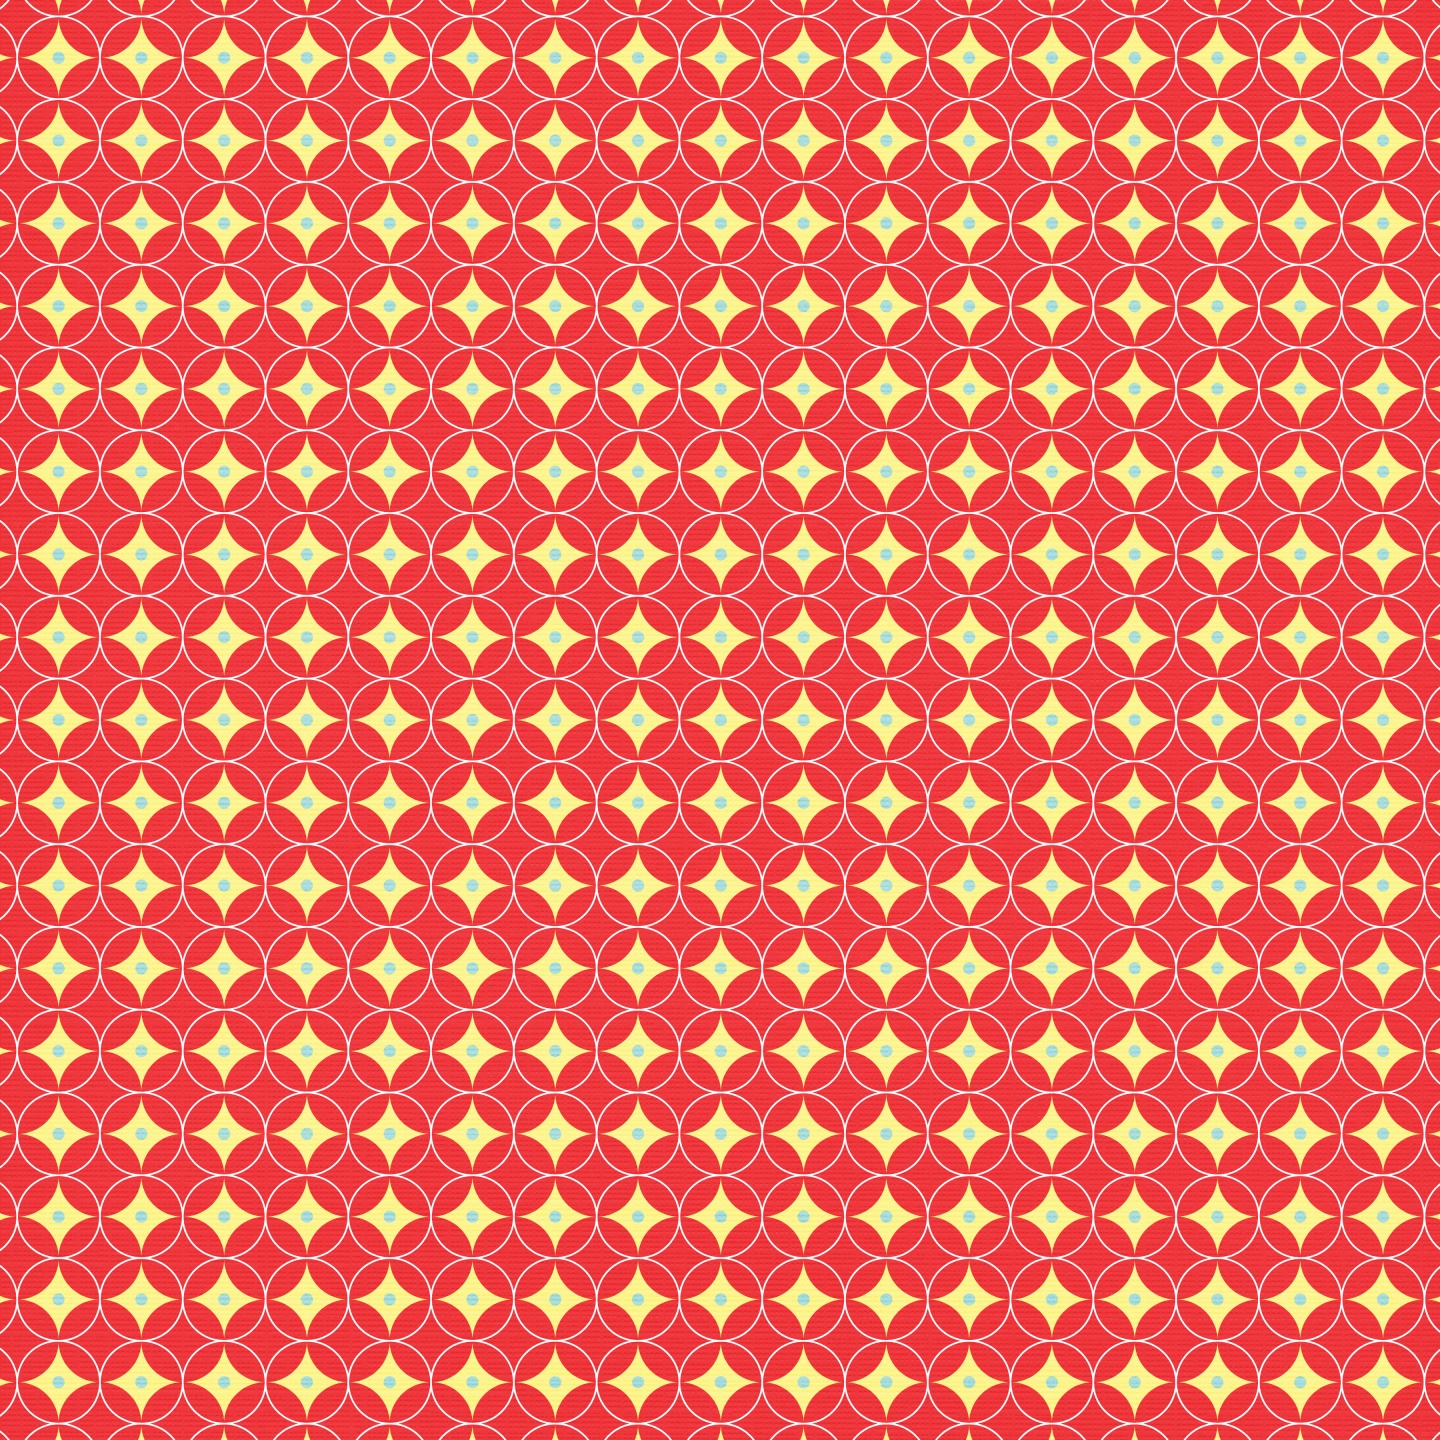 papel digital festa chapeuzinho vermelho 3